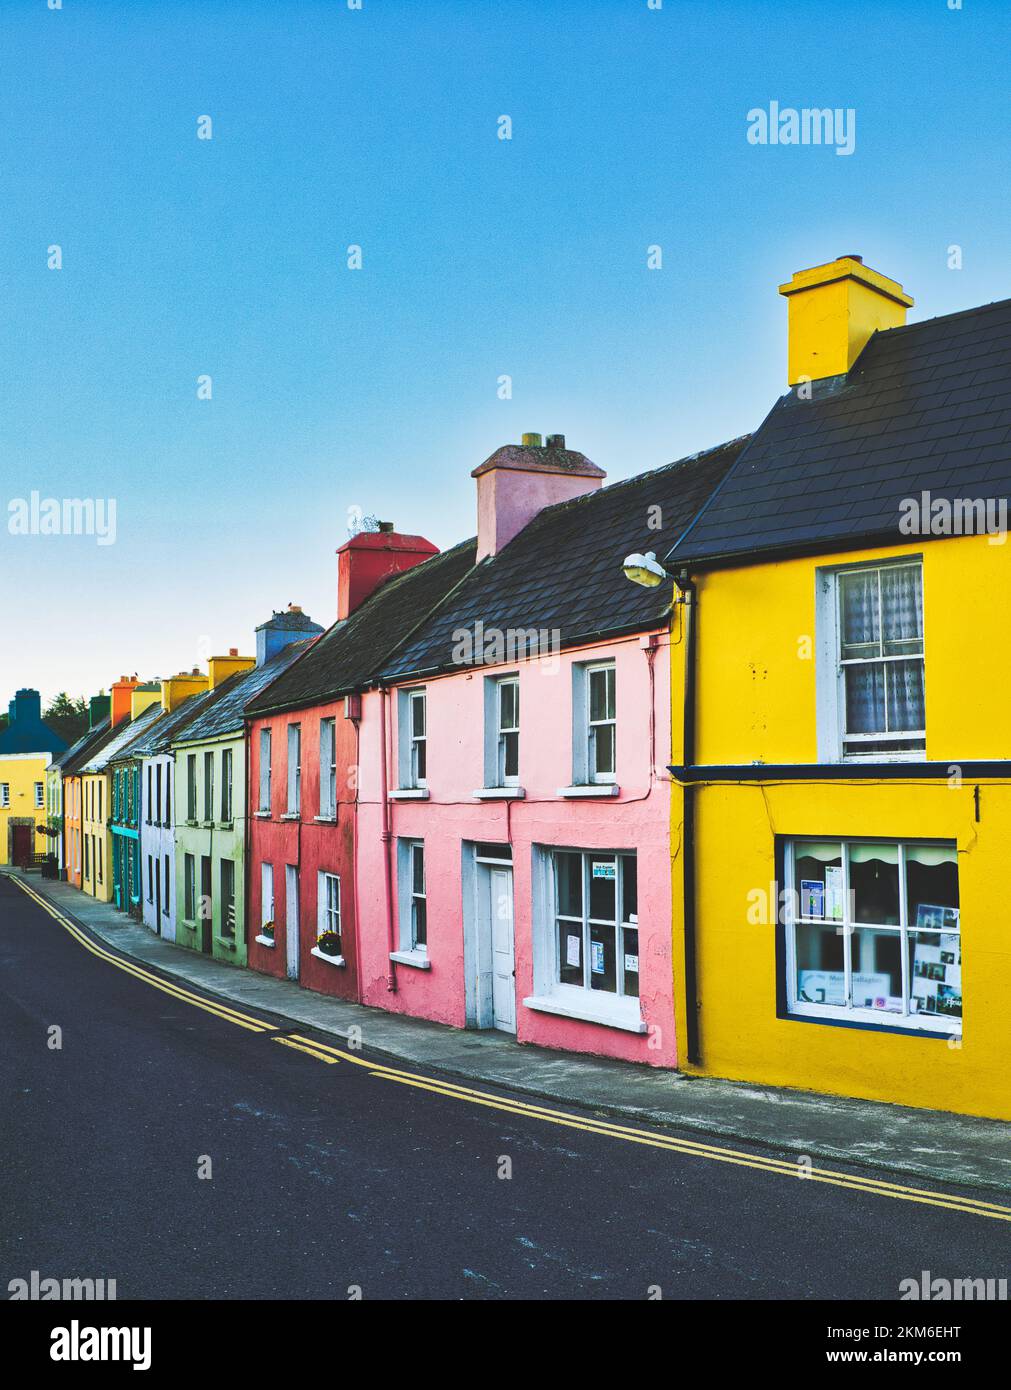 Eine Reihe von lebhaften, hell bemalten Häusern bei Tagesanbruch im Dorf Eyeries, Beara Peninsula, County Cork, Irland Stockfoto